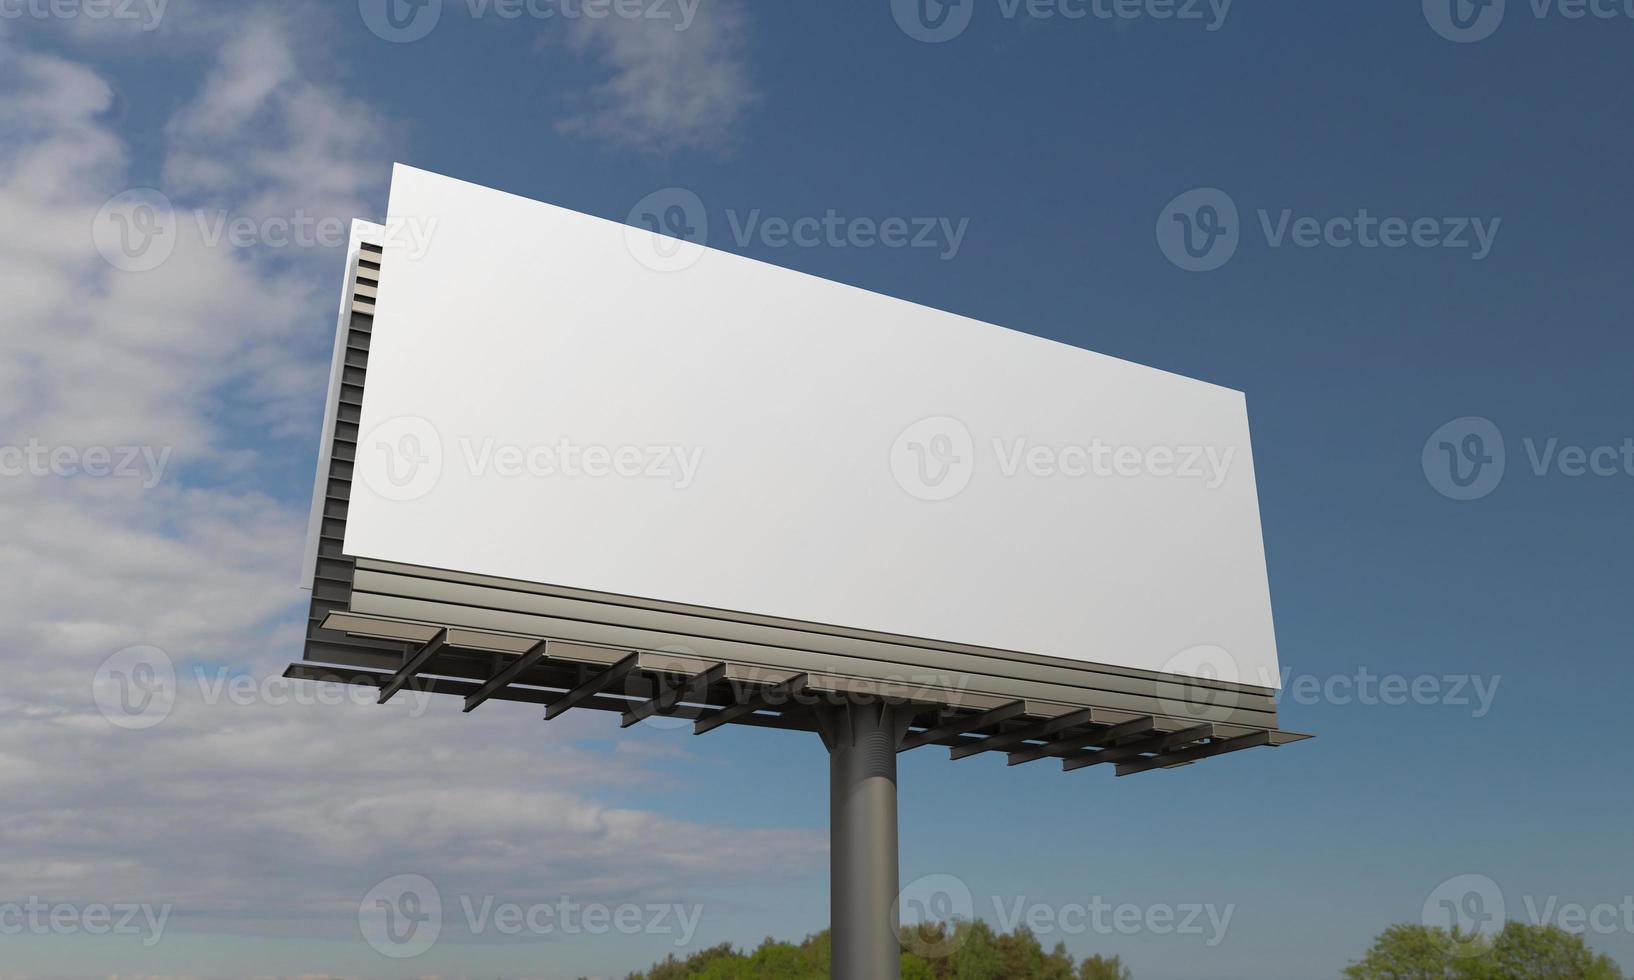 Billboard-Zeichen 3D gerenderte Darstellung foto